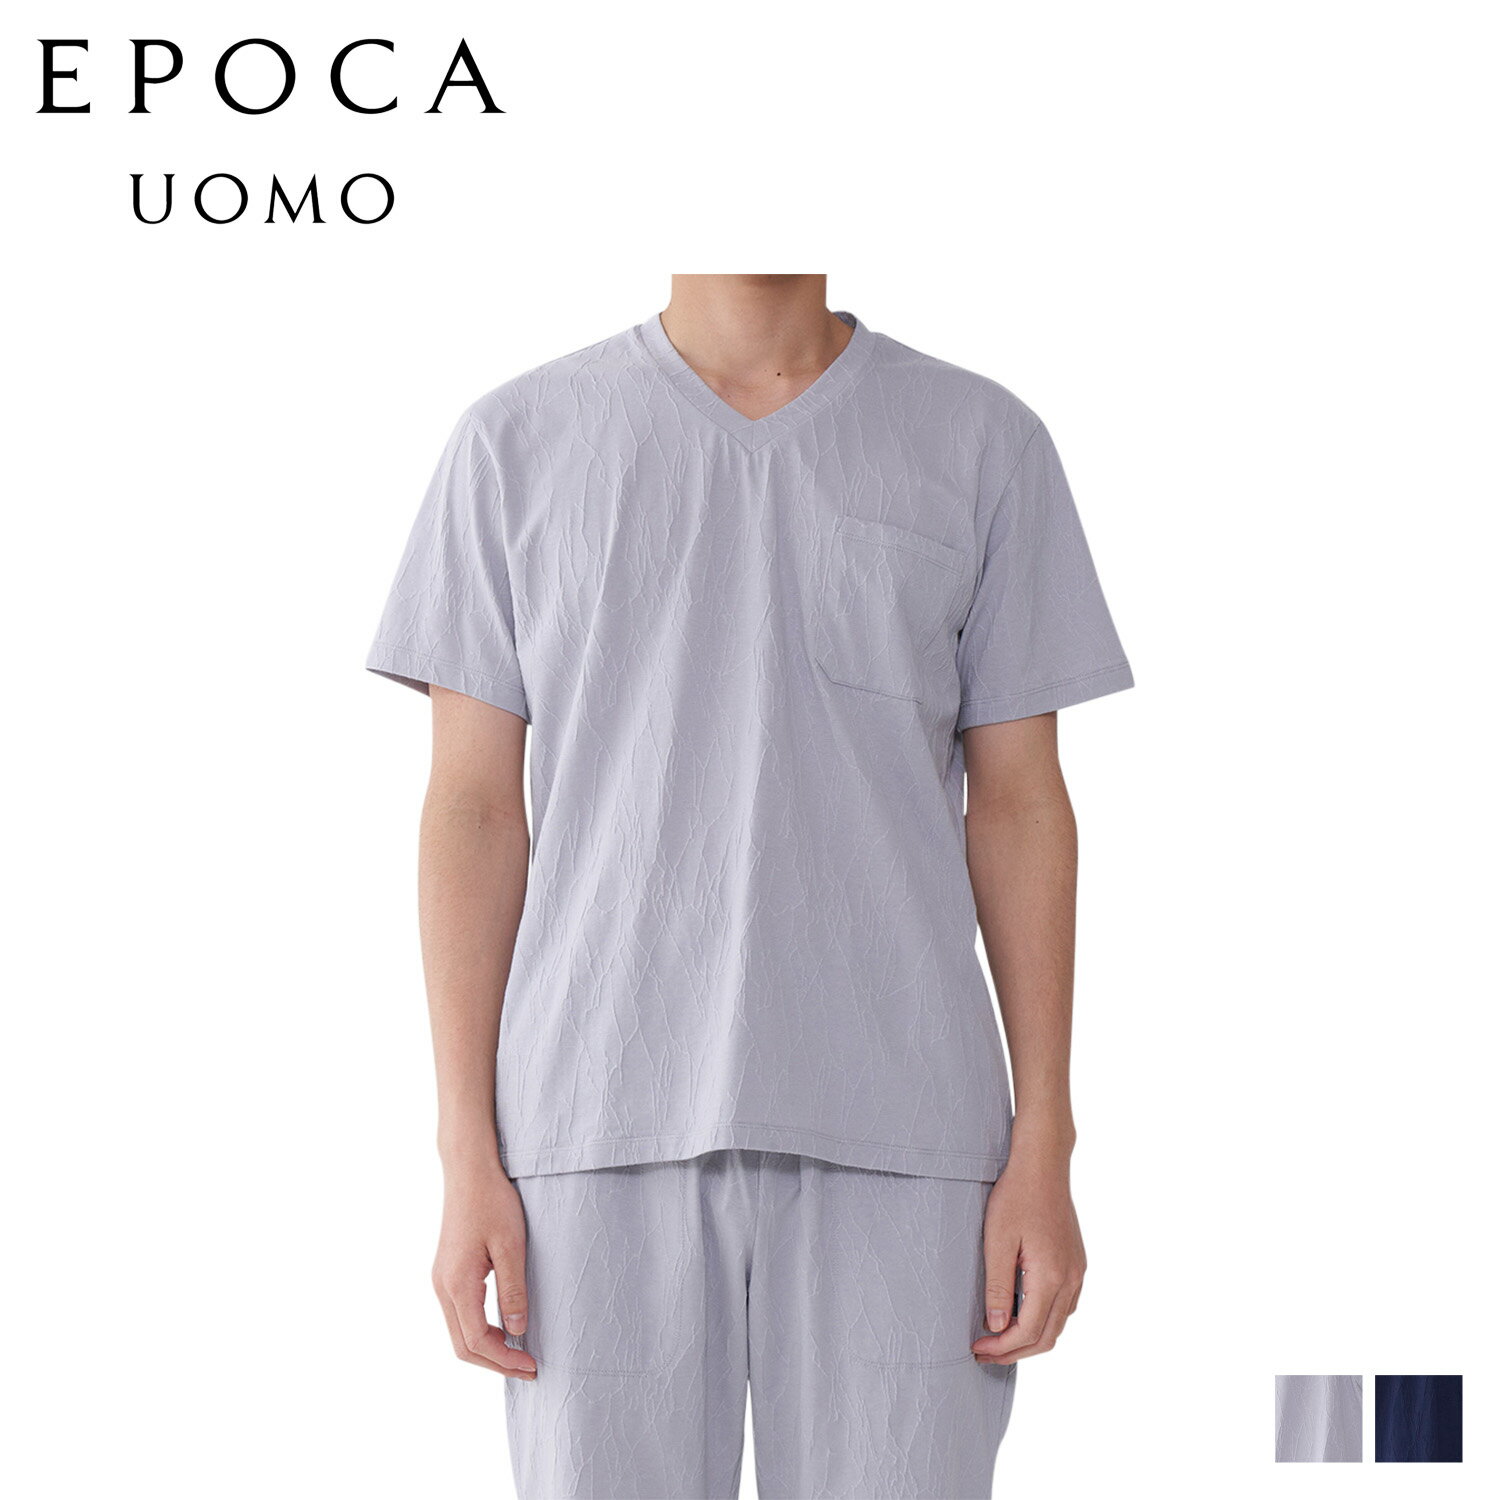 EPOCA UOMO V NECK SHIRT エポカ ウォモ Tシャツ 半袖 インナーシャツ ホームウェア ルームウェア メンズ ジャガード グレー ネイビー 0401-37